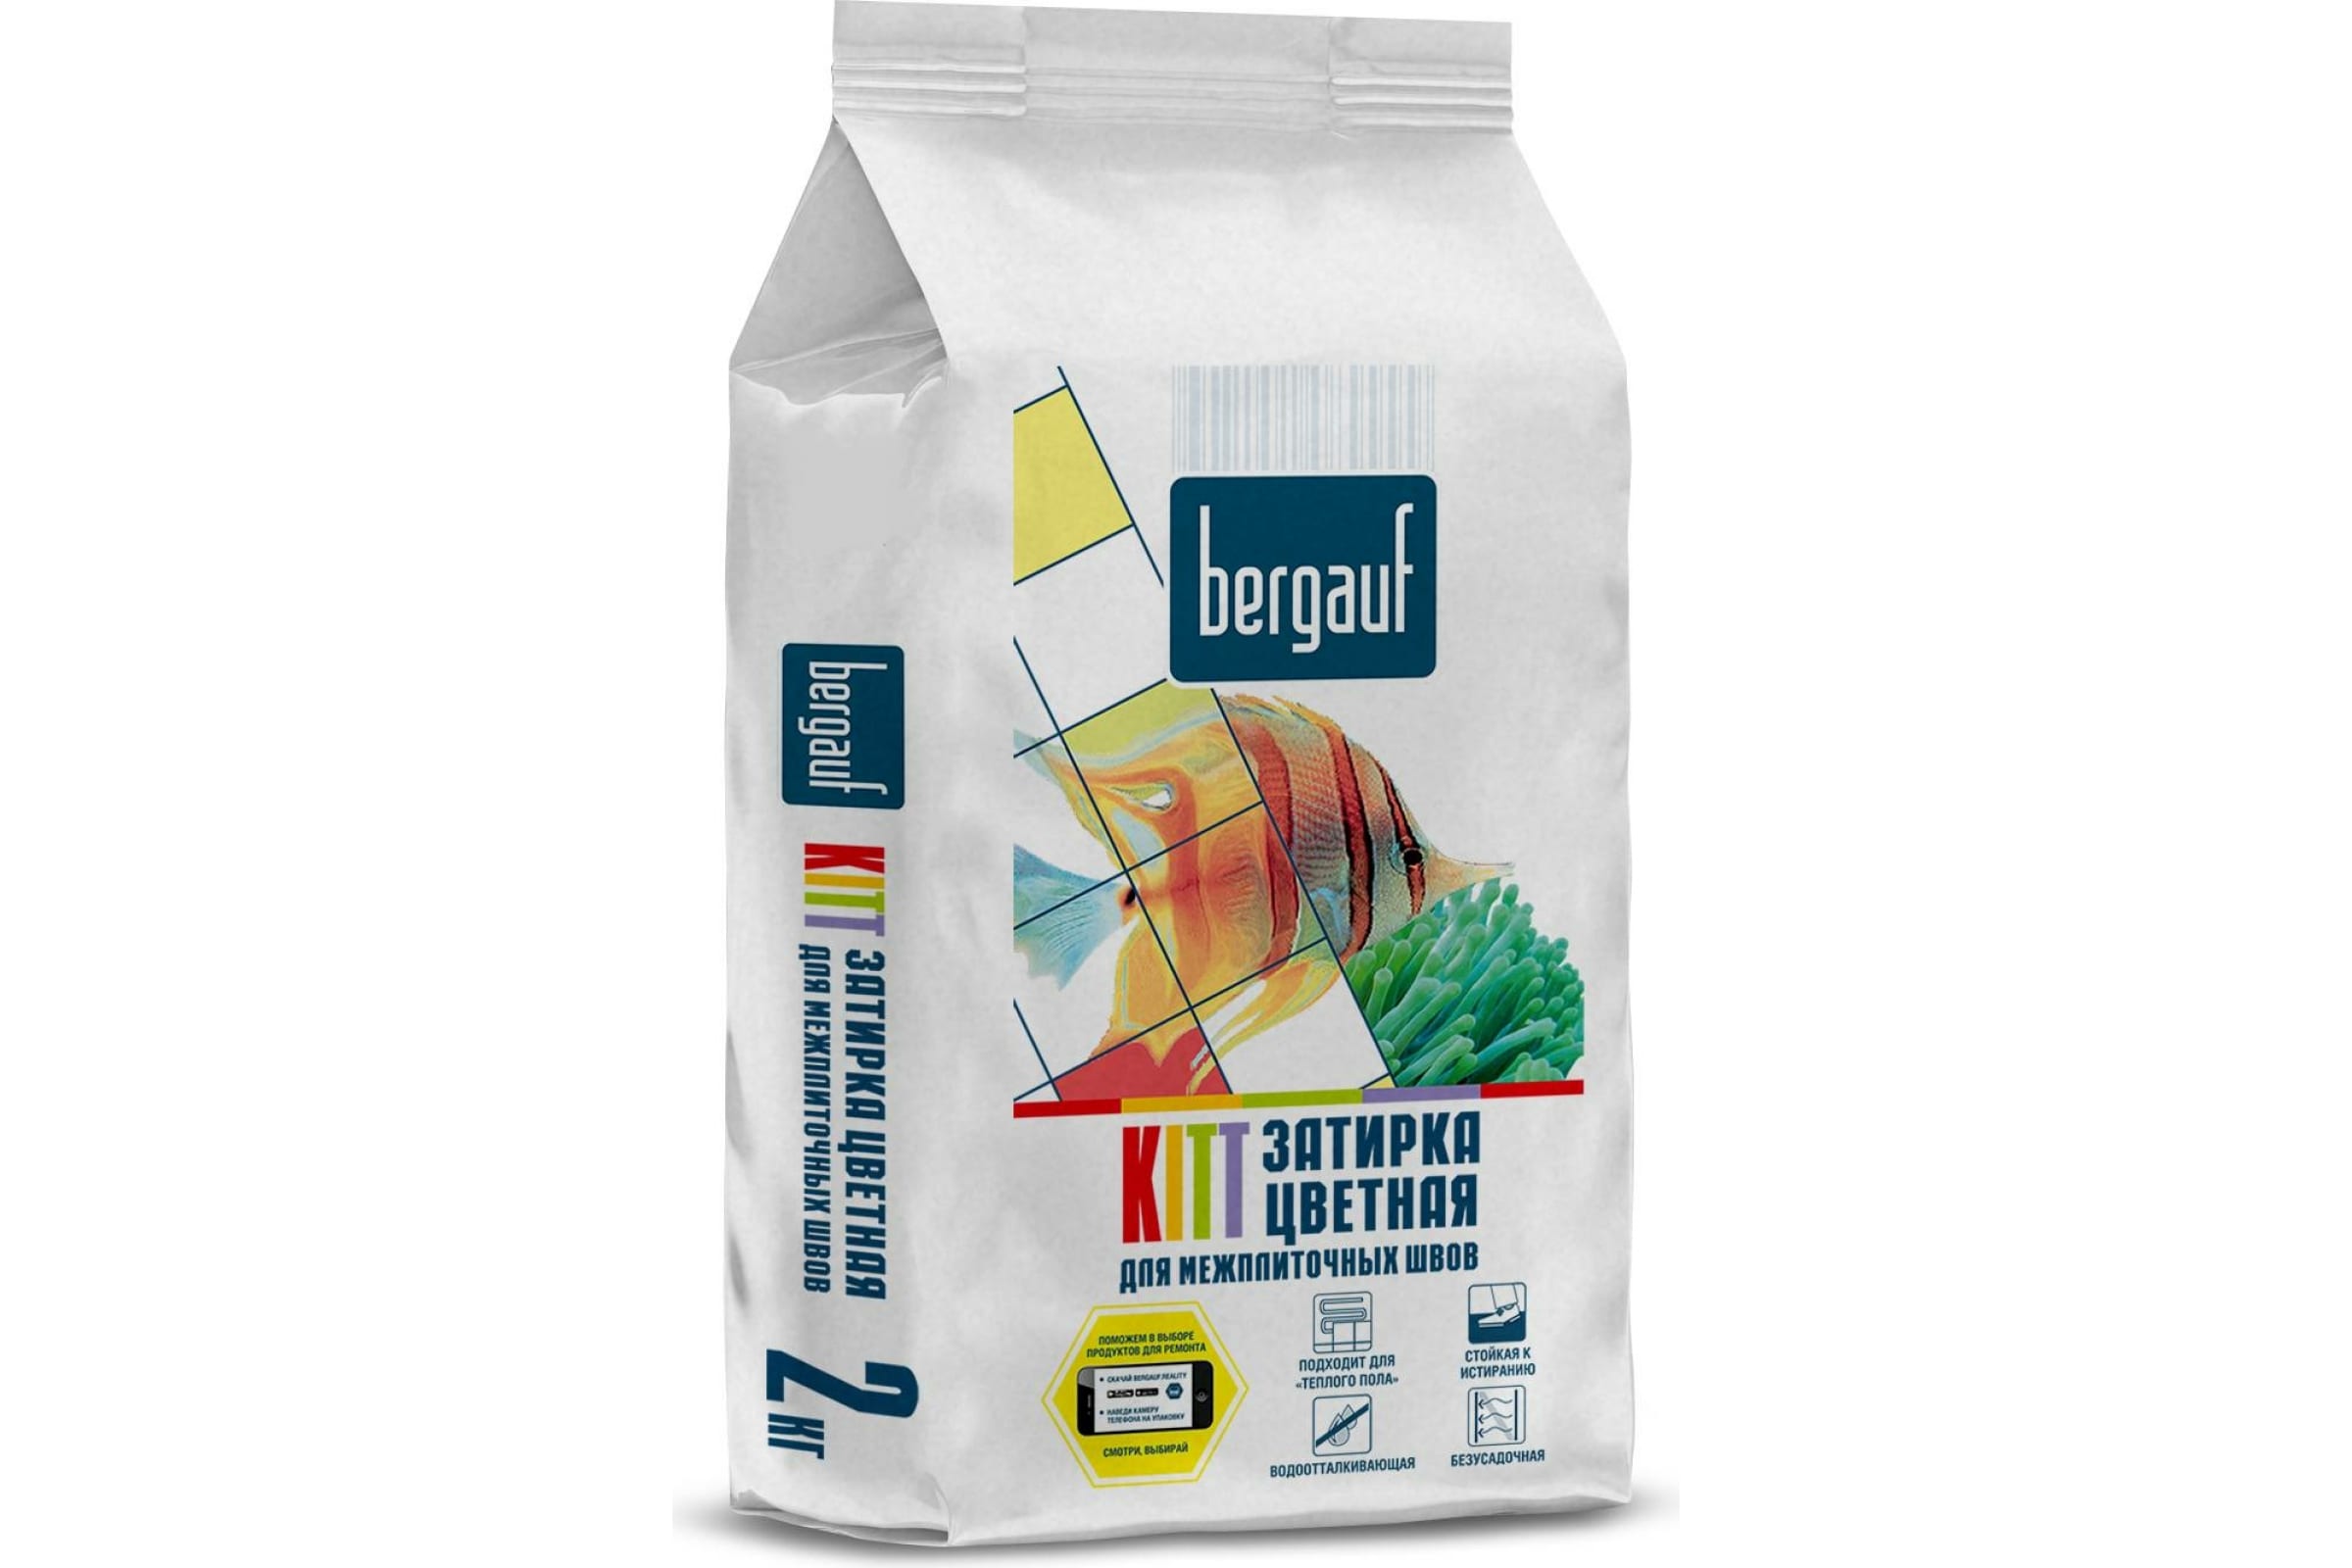 Bergauf Kitt, затирка багама для межплиточных швов, 2 кг 13116